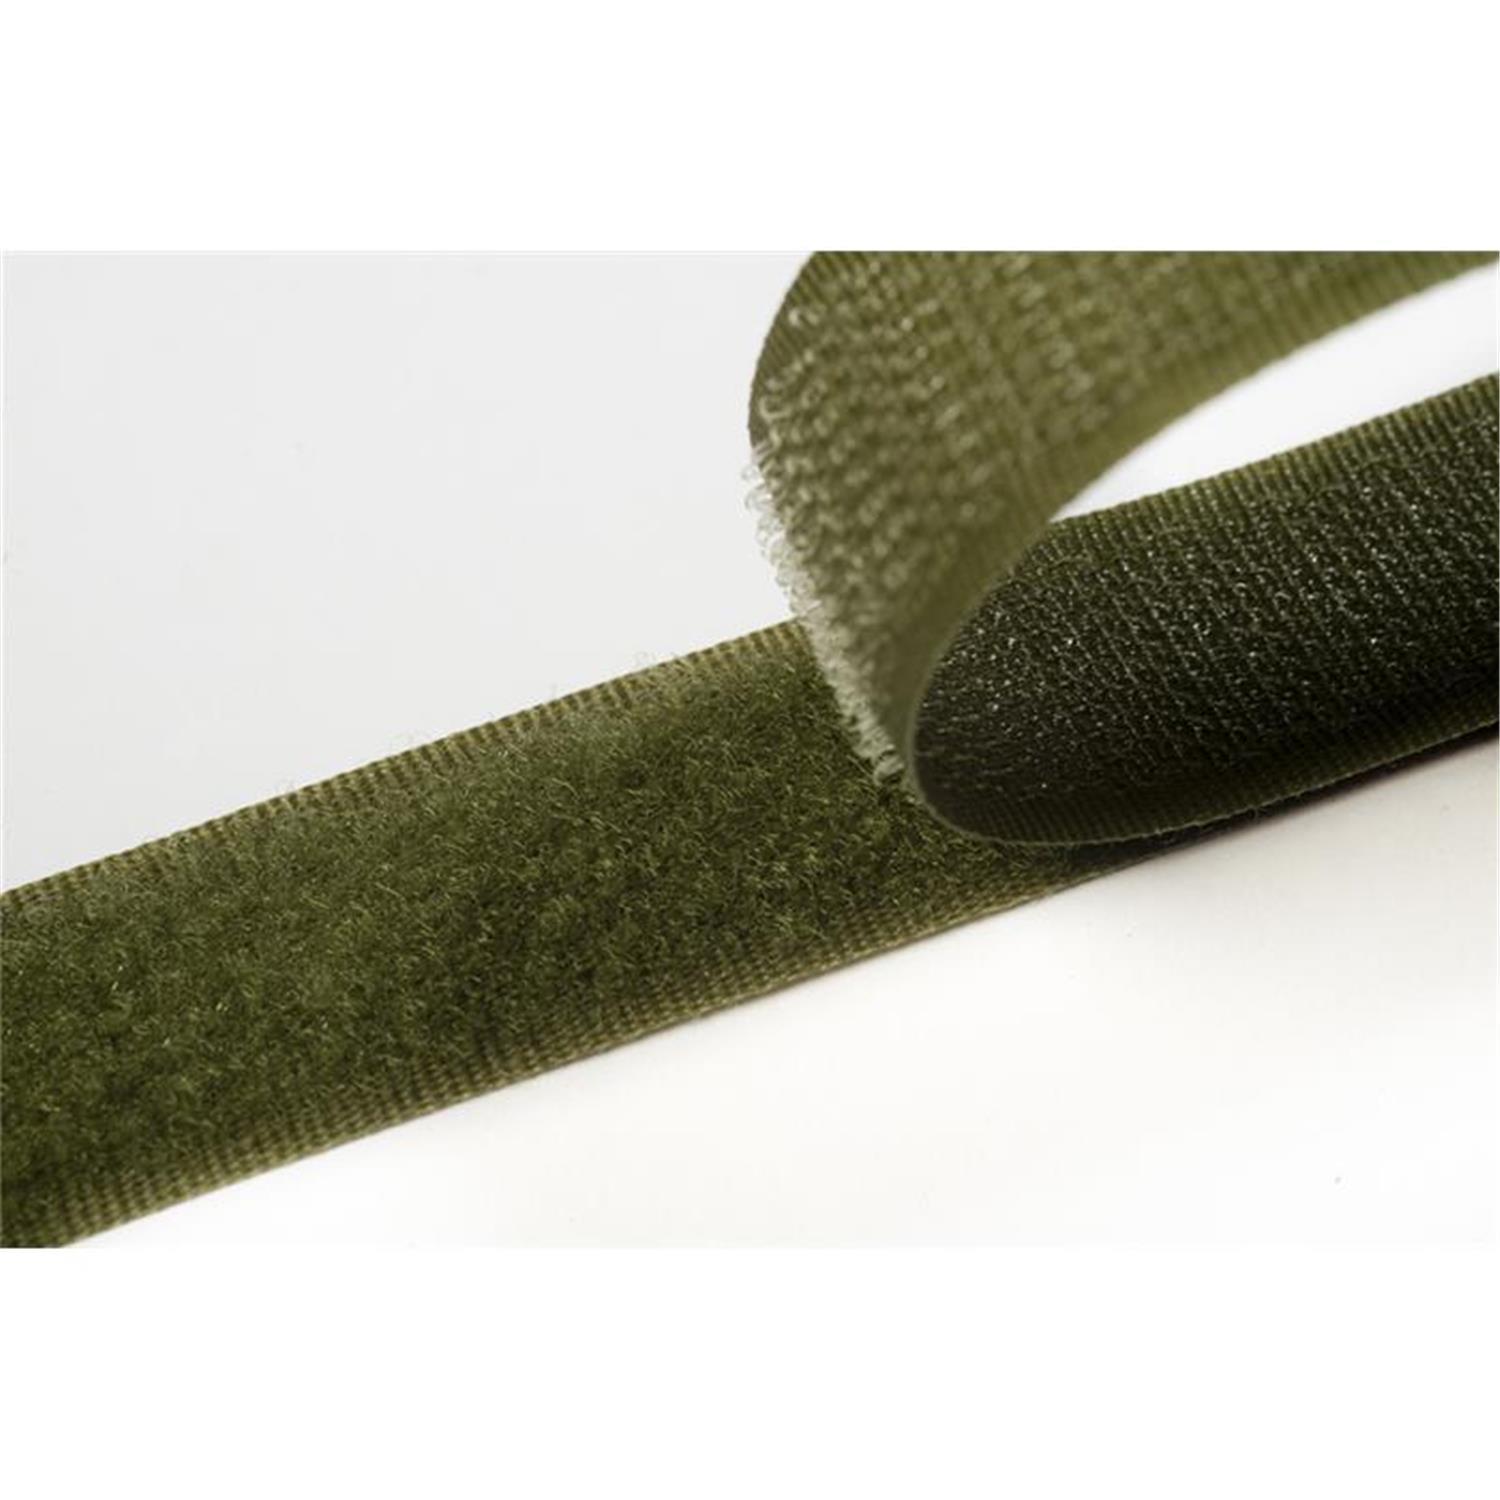 Klettband zum aufnähen, 20 mm, olivgrün #34 25 Meter